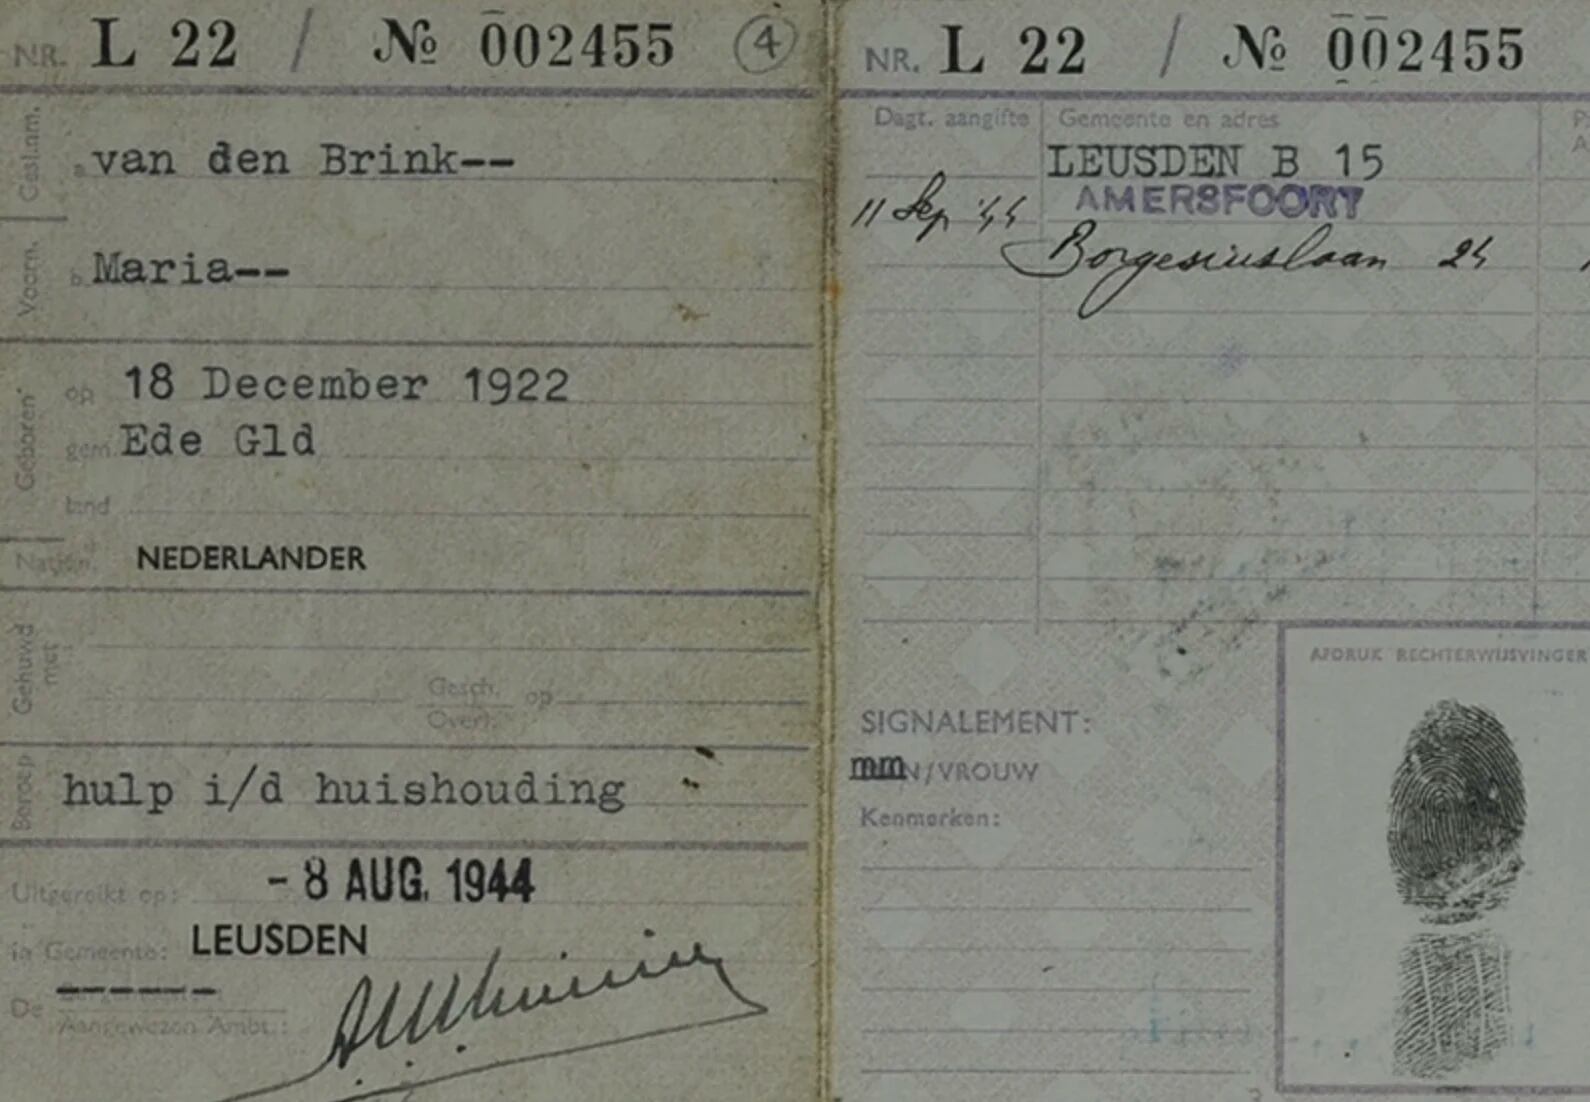 Documento de identidad a nombre de Maria van den Brink, la identidad ficticia que debió asumir Betje-Hadassah Polak. (Yad Vashem)